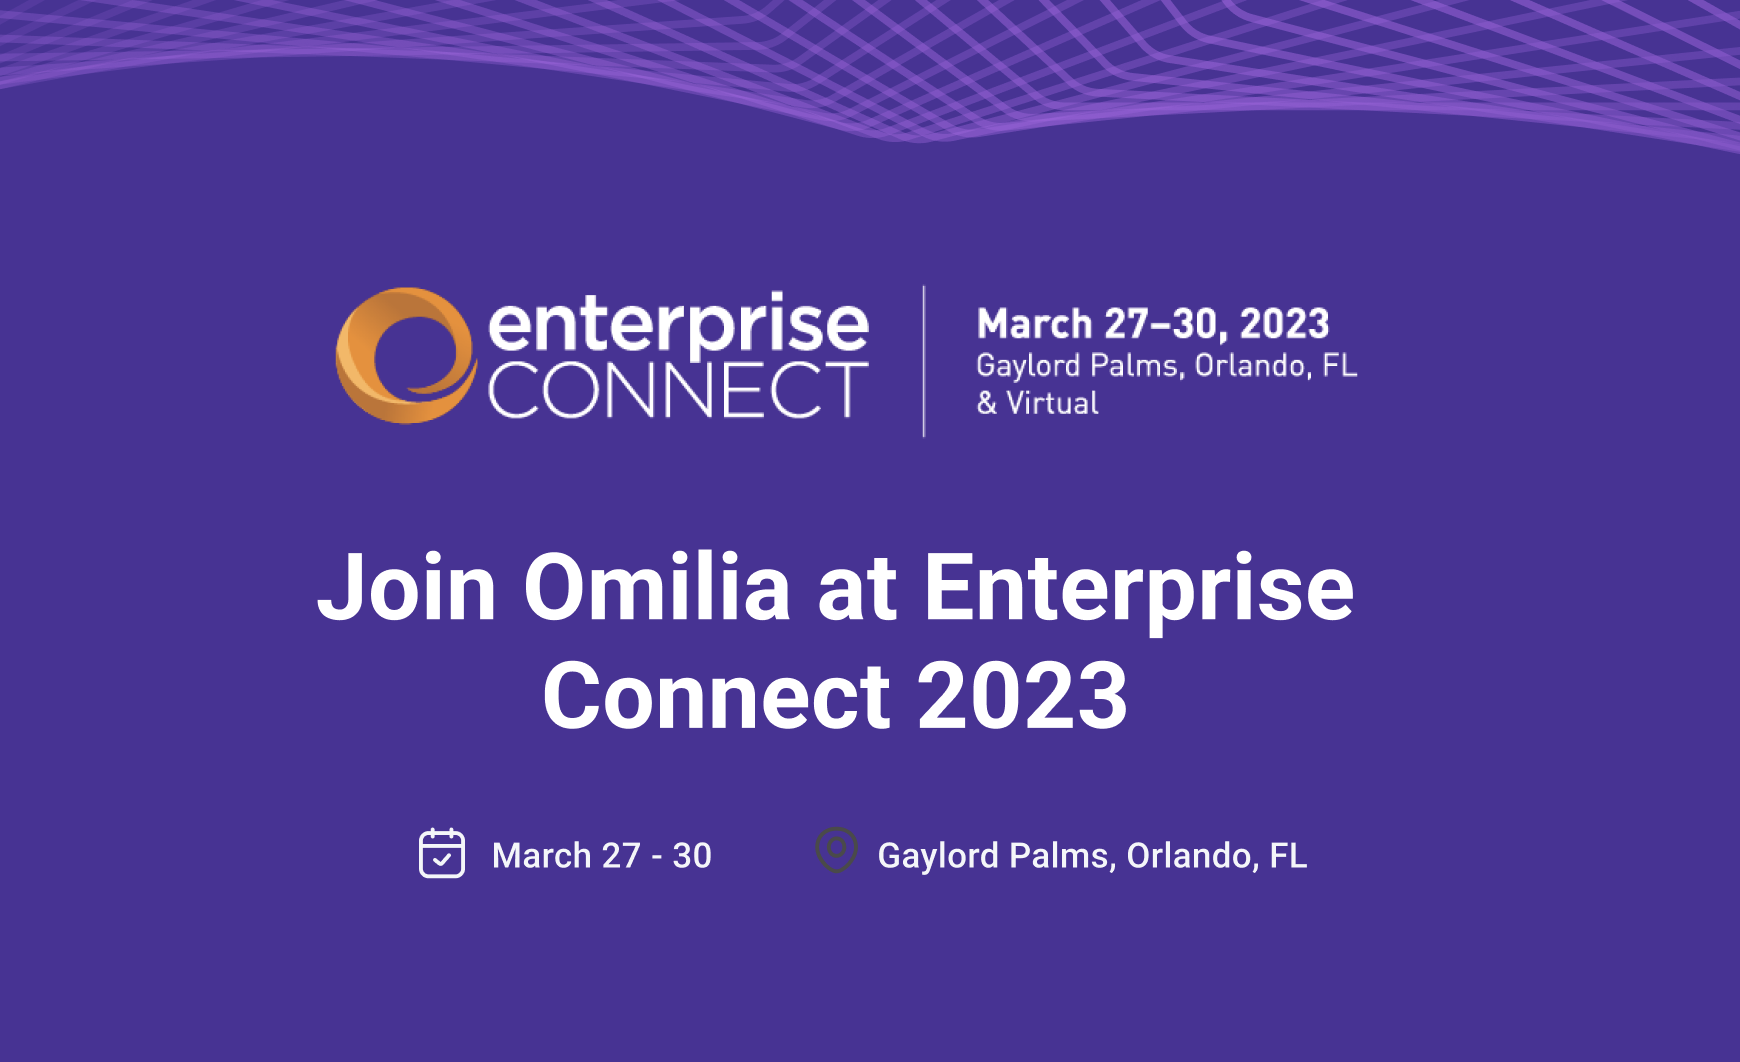 Omilia to Attend Enterprise Connect 2023 in Orlando, Florida